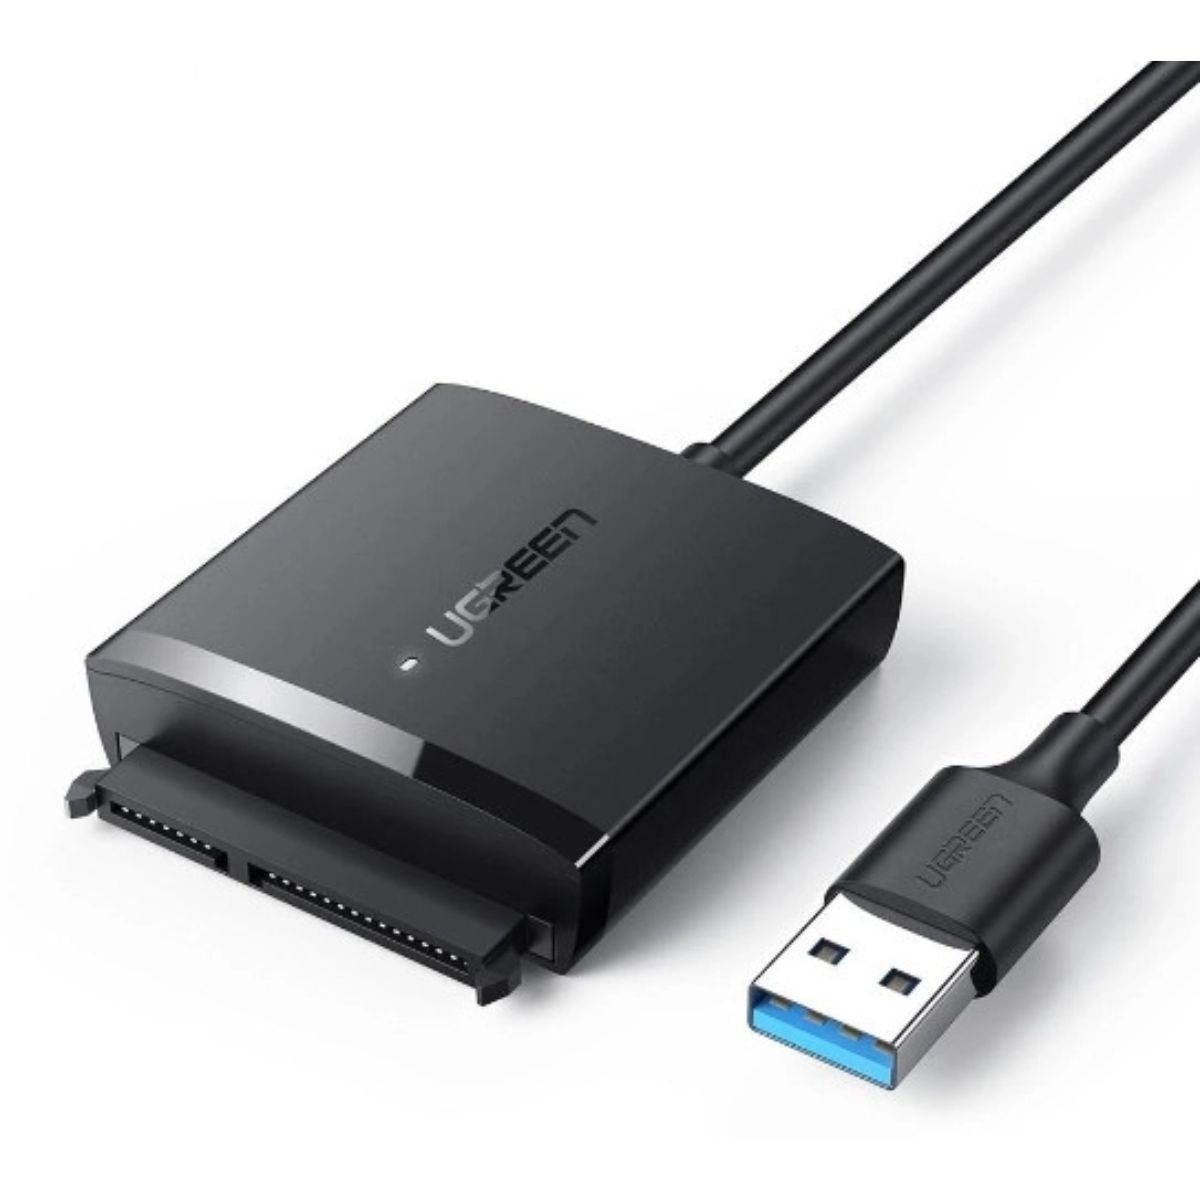 Thiết bị chuyển đổi USB 3.0 sang SATA Ugreen 60561 CM257 tốc độ truyền tải dữ liệu 5Gbps